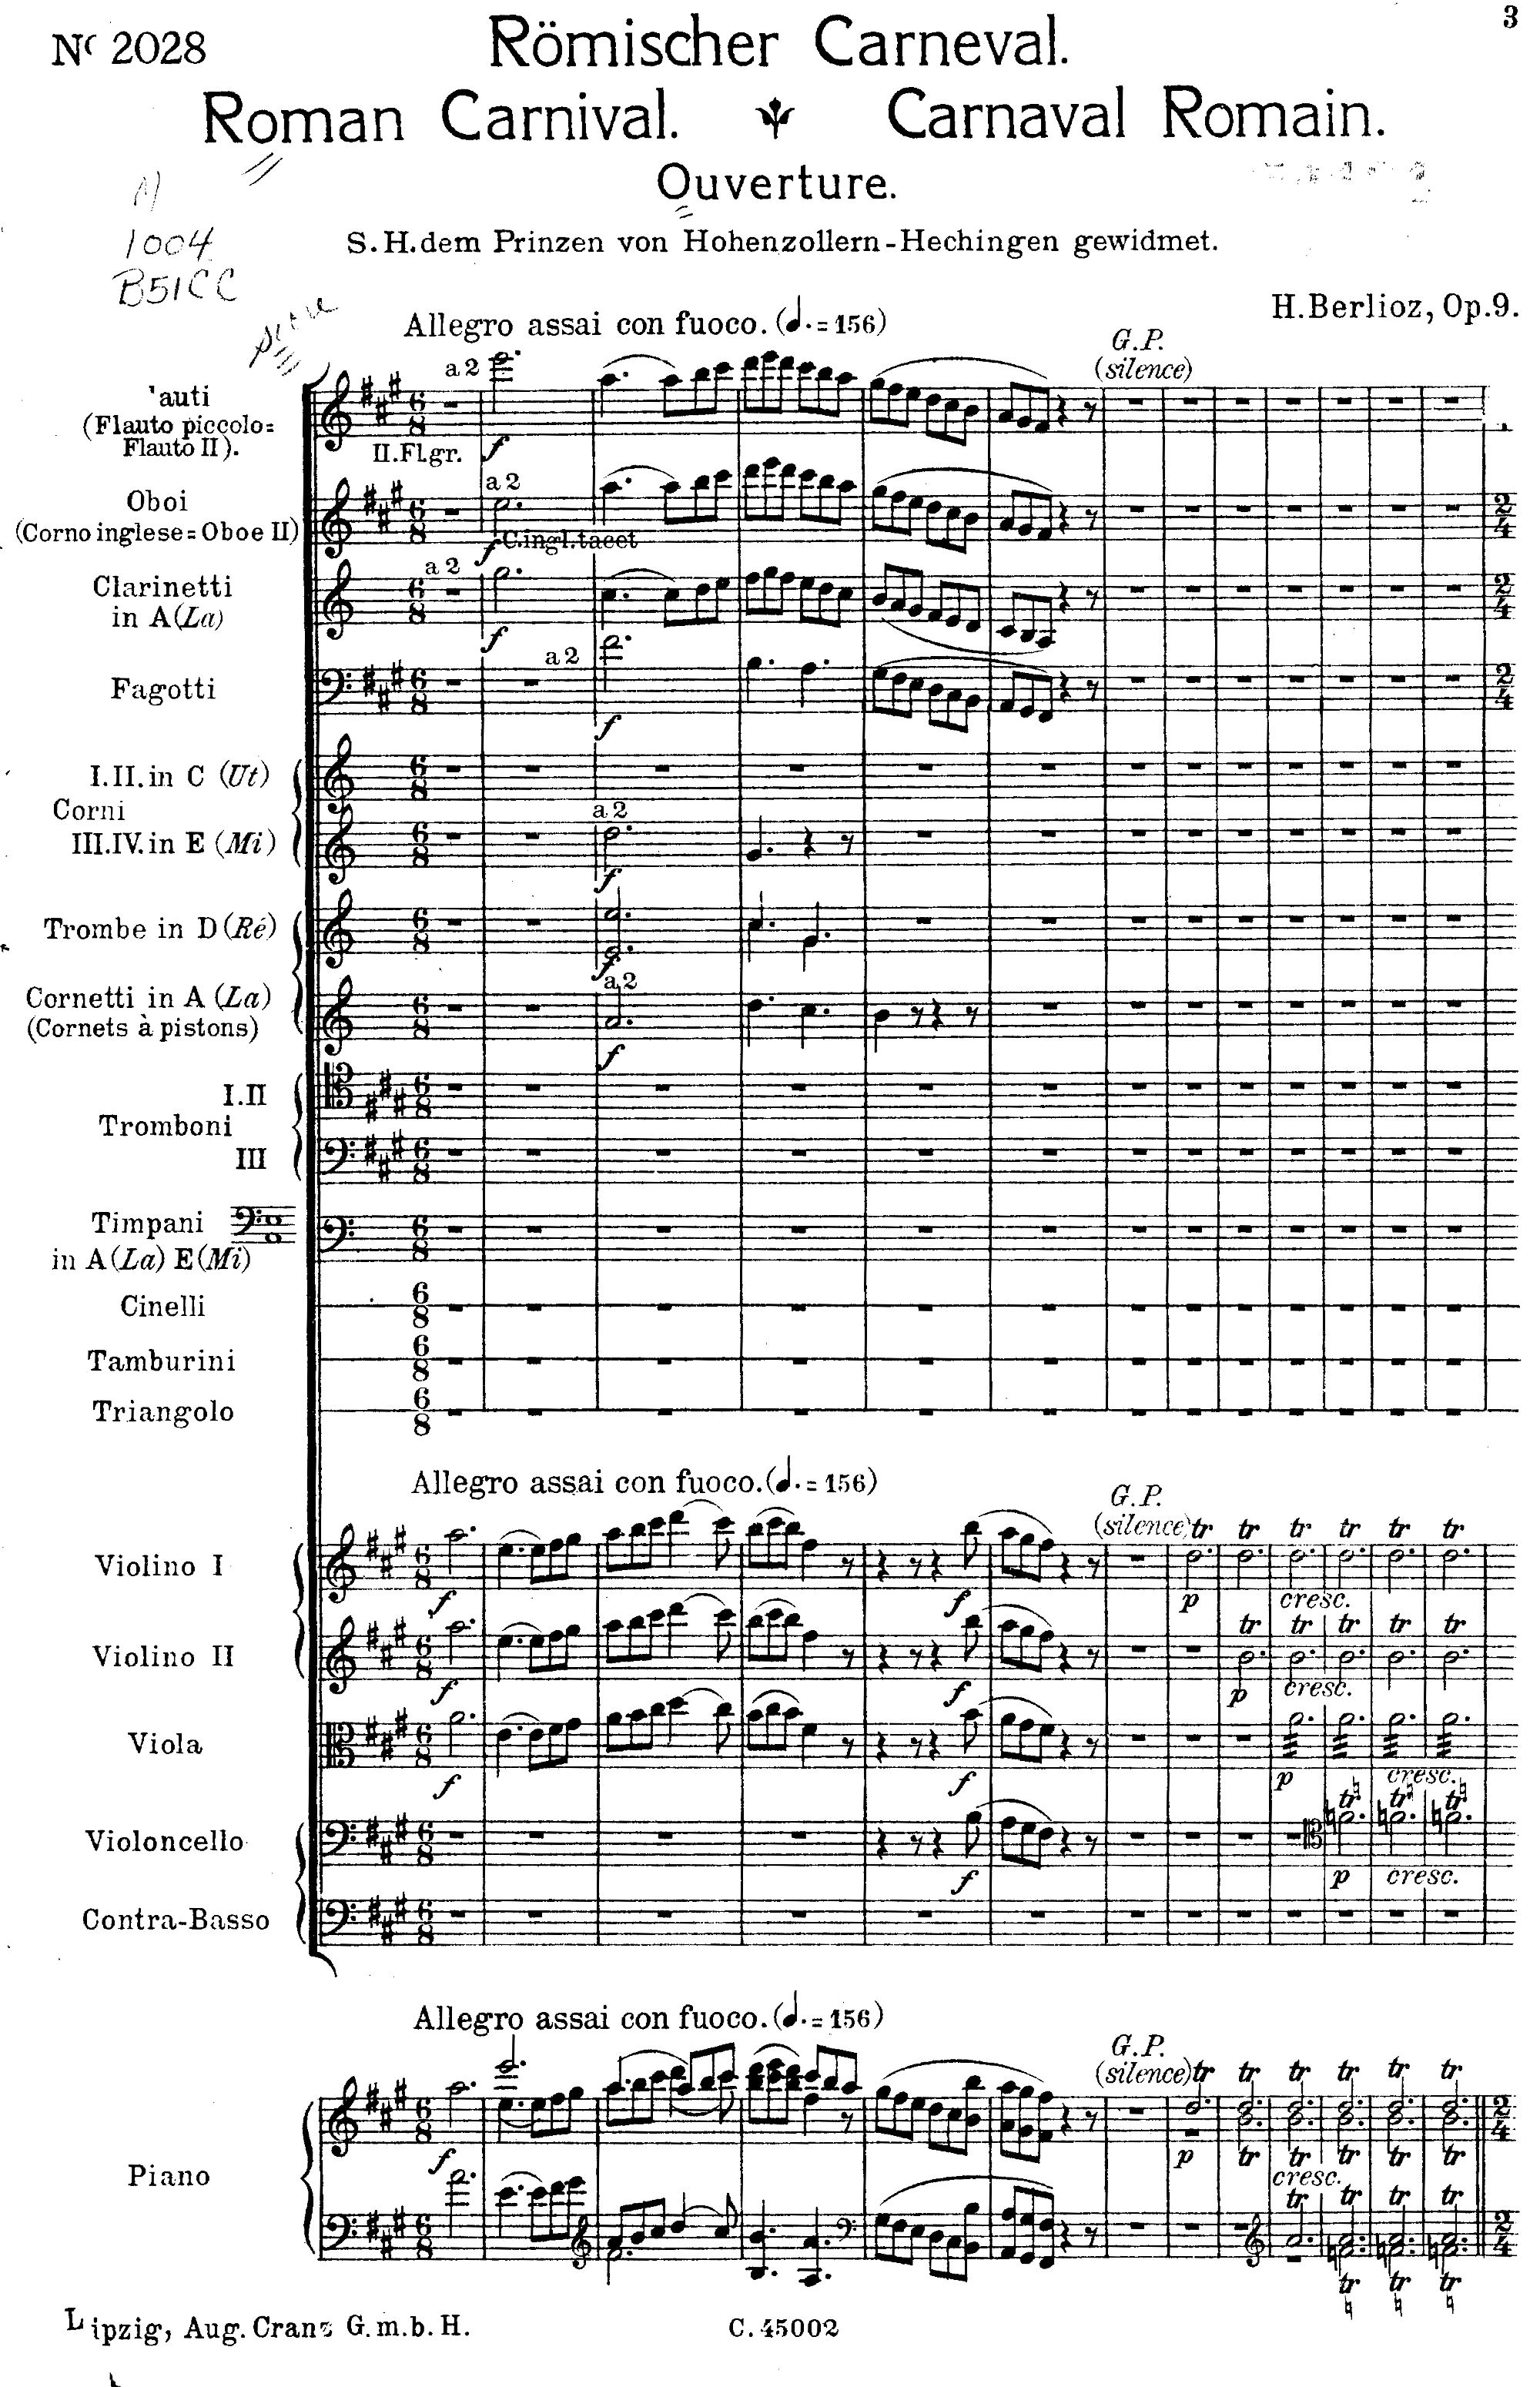 Première page de la partition du Carnaval Romain, édition Leipzig: A. Cranz, n.d.(ca.1915). Plate C. 45002, avec au bas une réduction pour piano